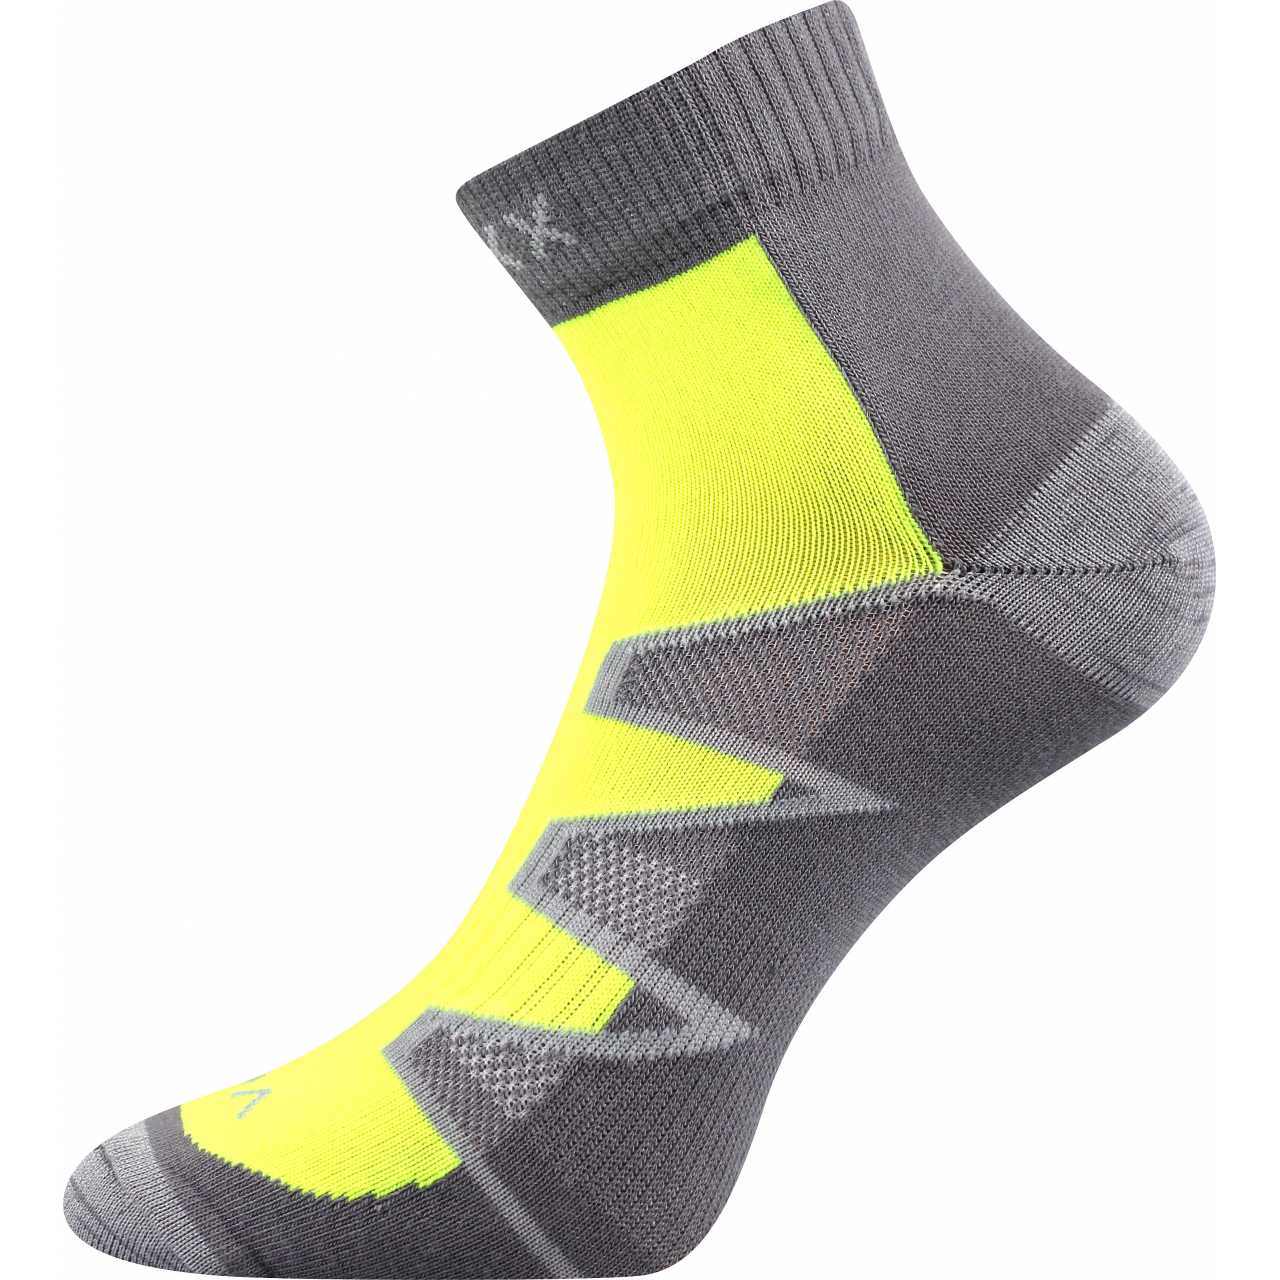 Sportovní ponožky Voxx Monsa - světle šedé-žluté, 39-42